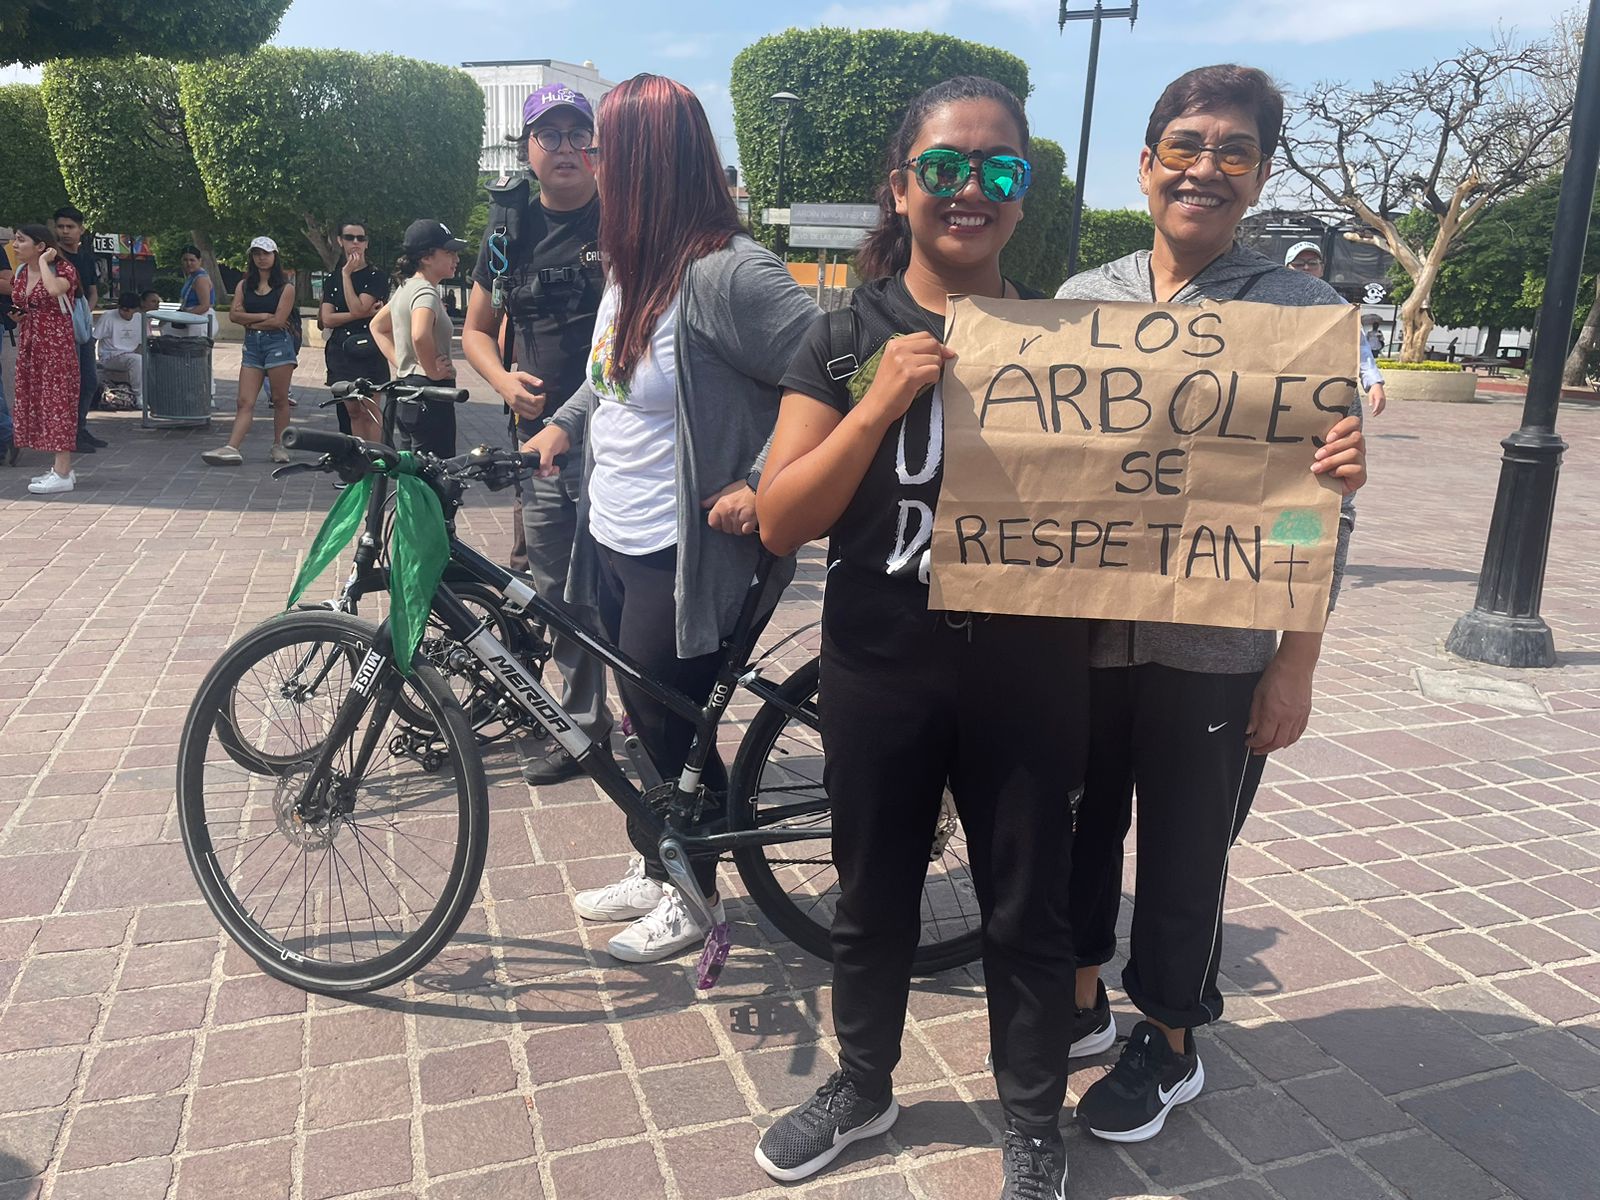 Ciudadanos llegaron a la Calzada de los Héroes con sus carteles de protesta. Crédito: Evlyn.Online